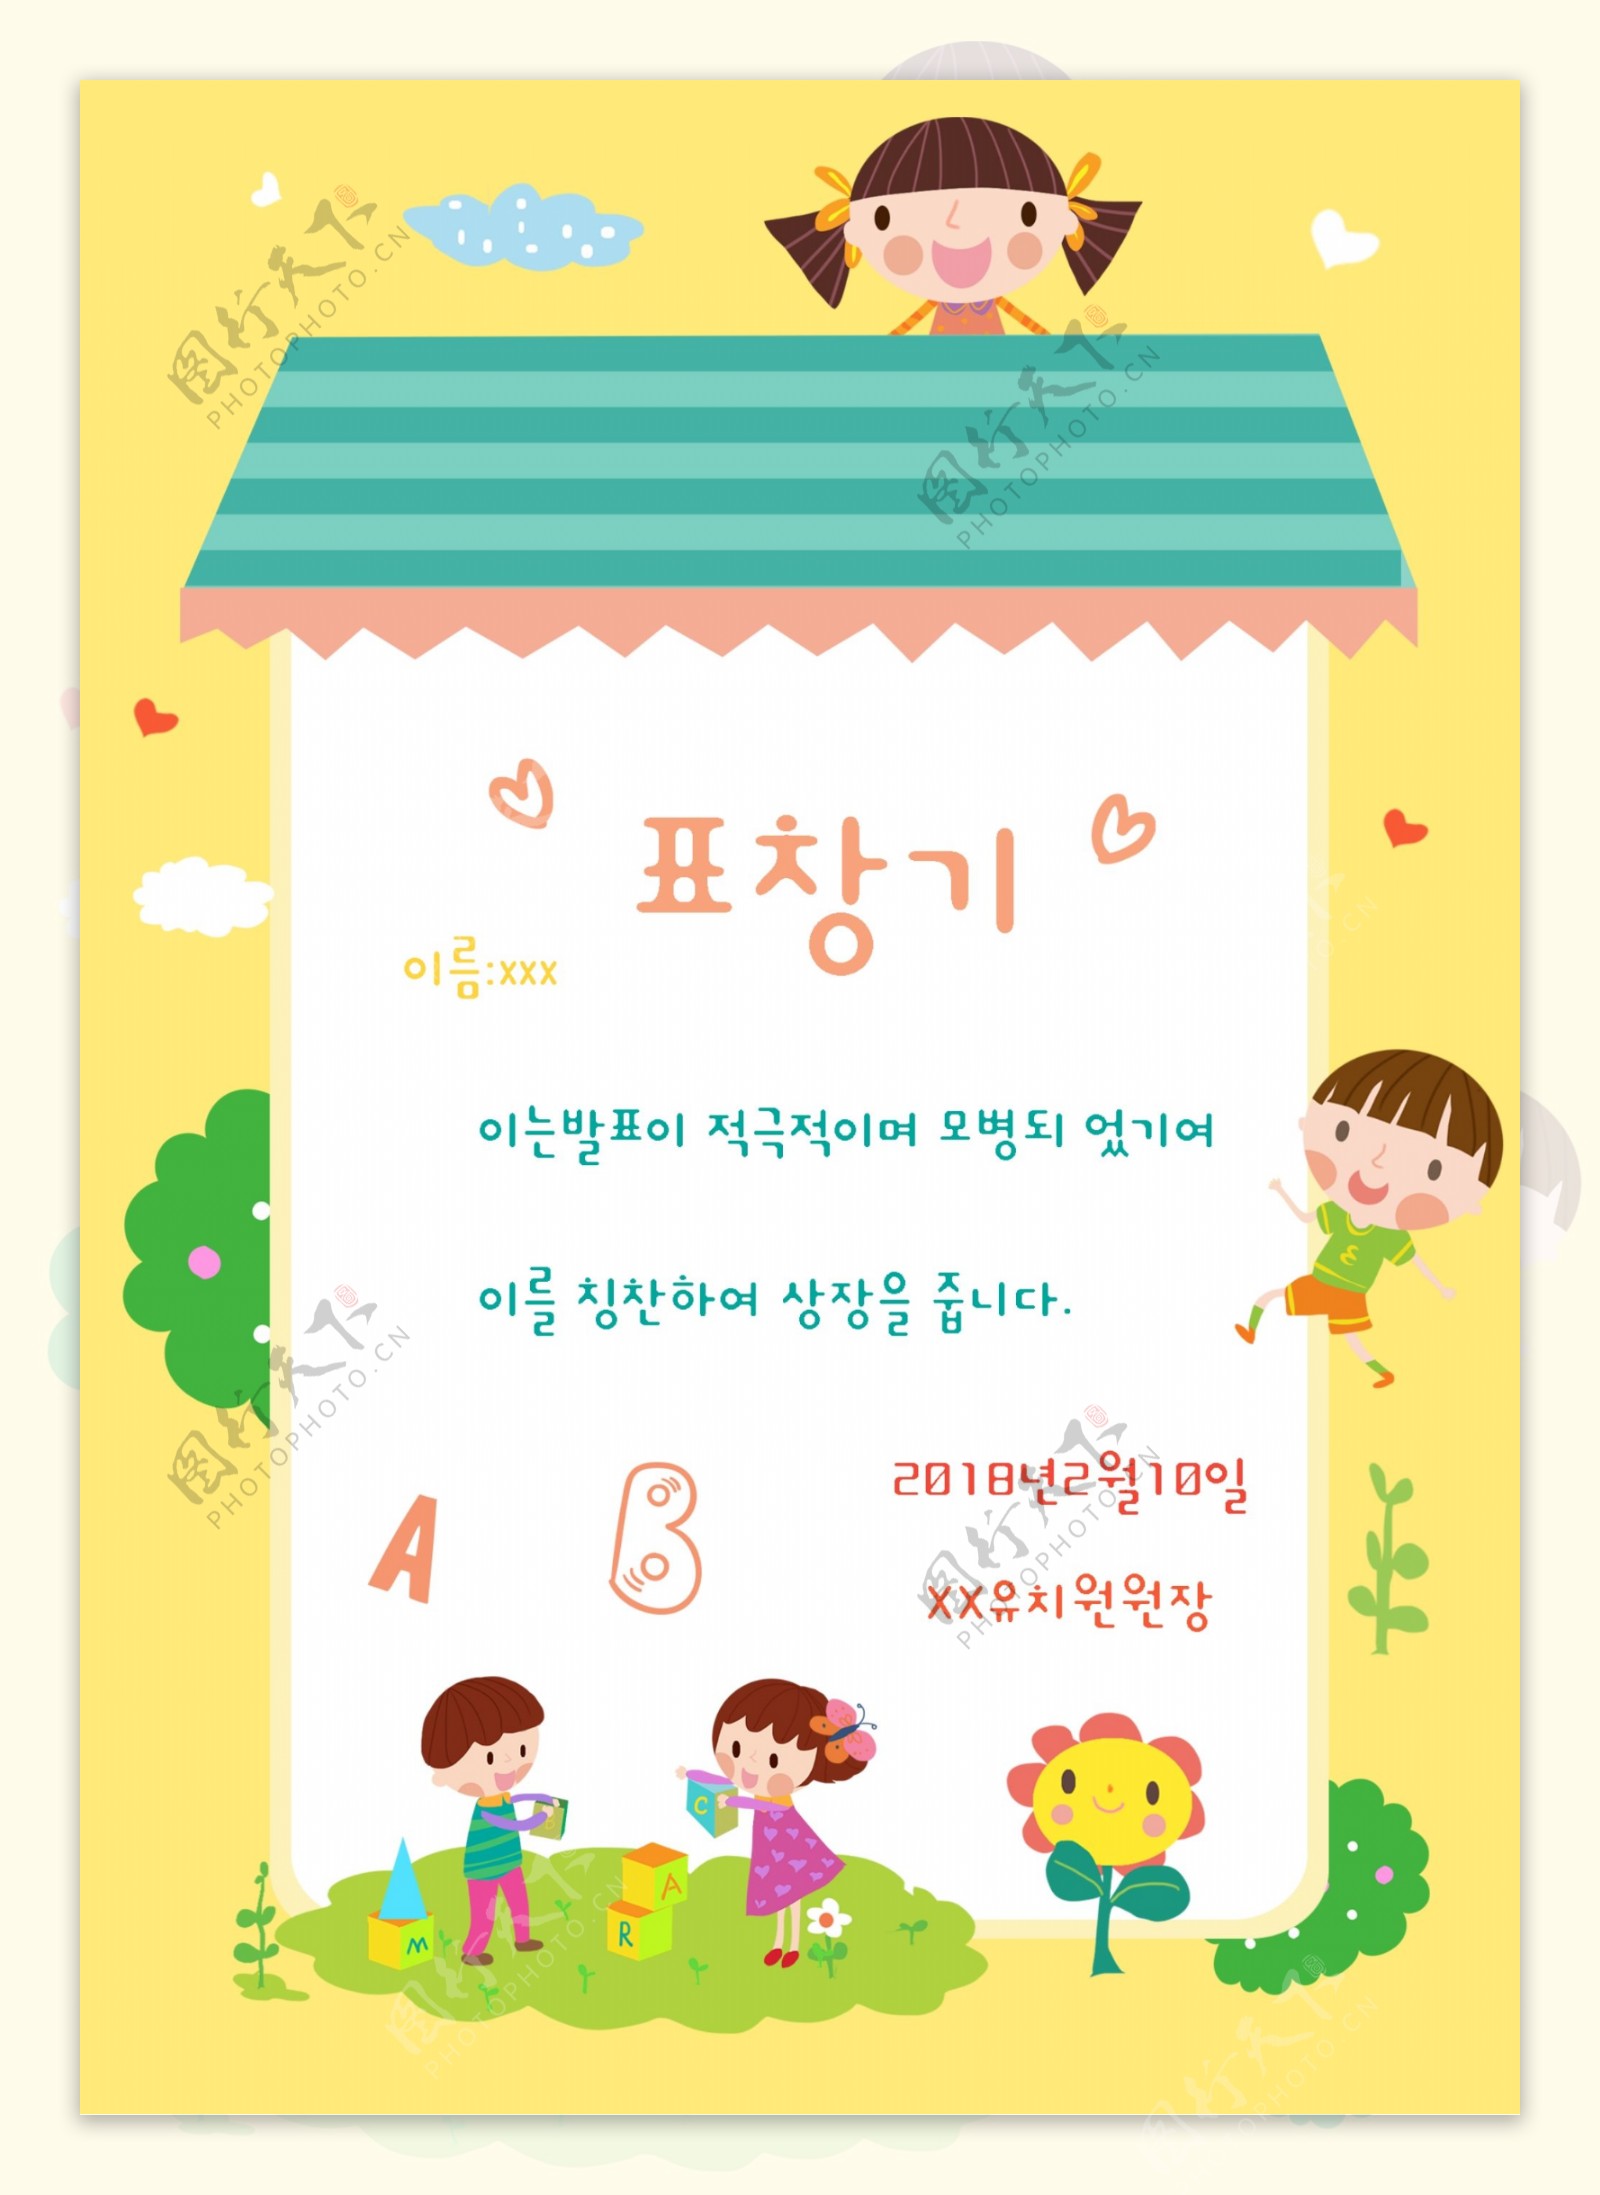 可爱的韩国风格卡通儿童教育锦旗海报模板